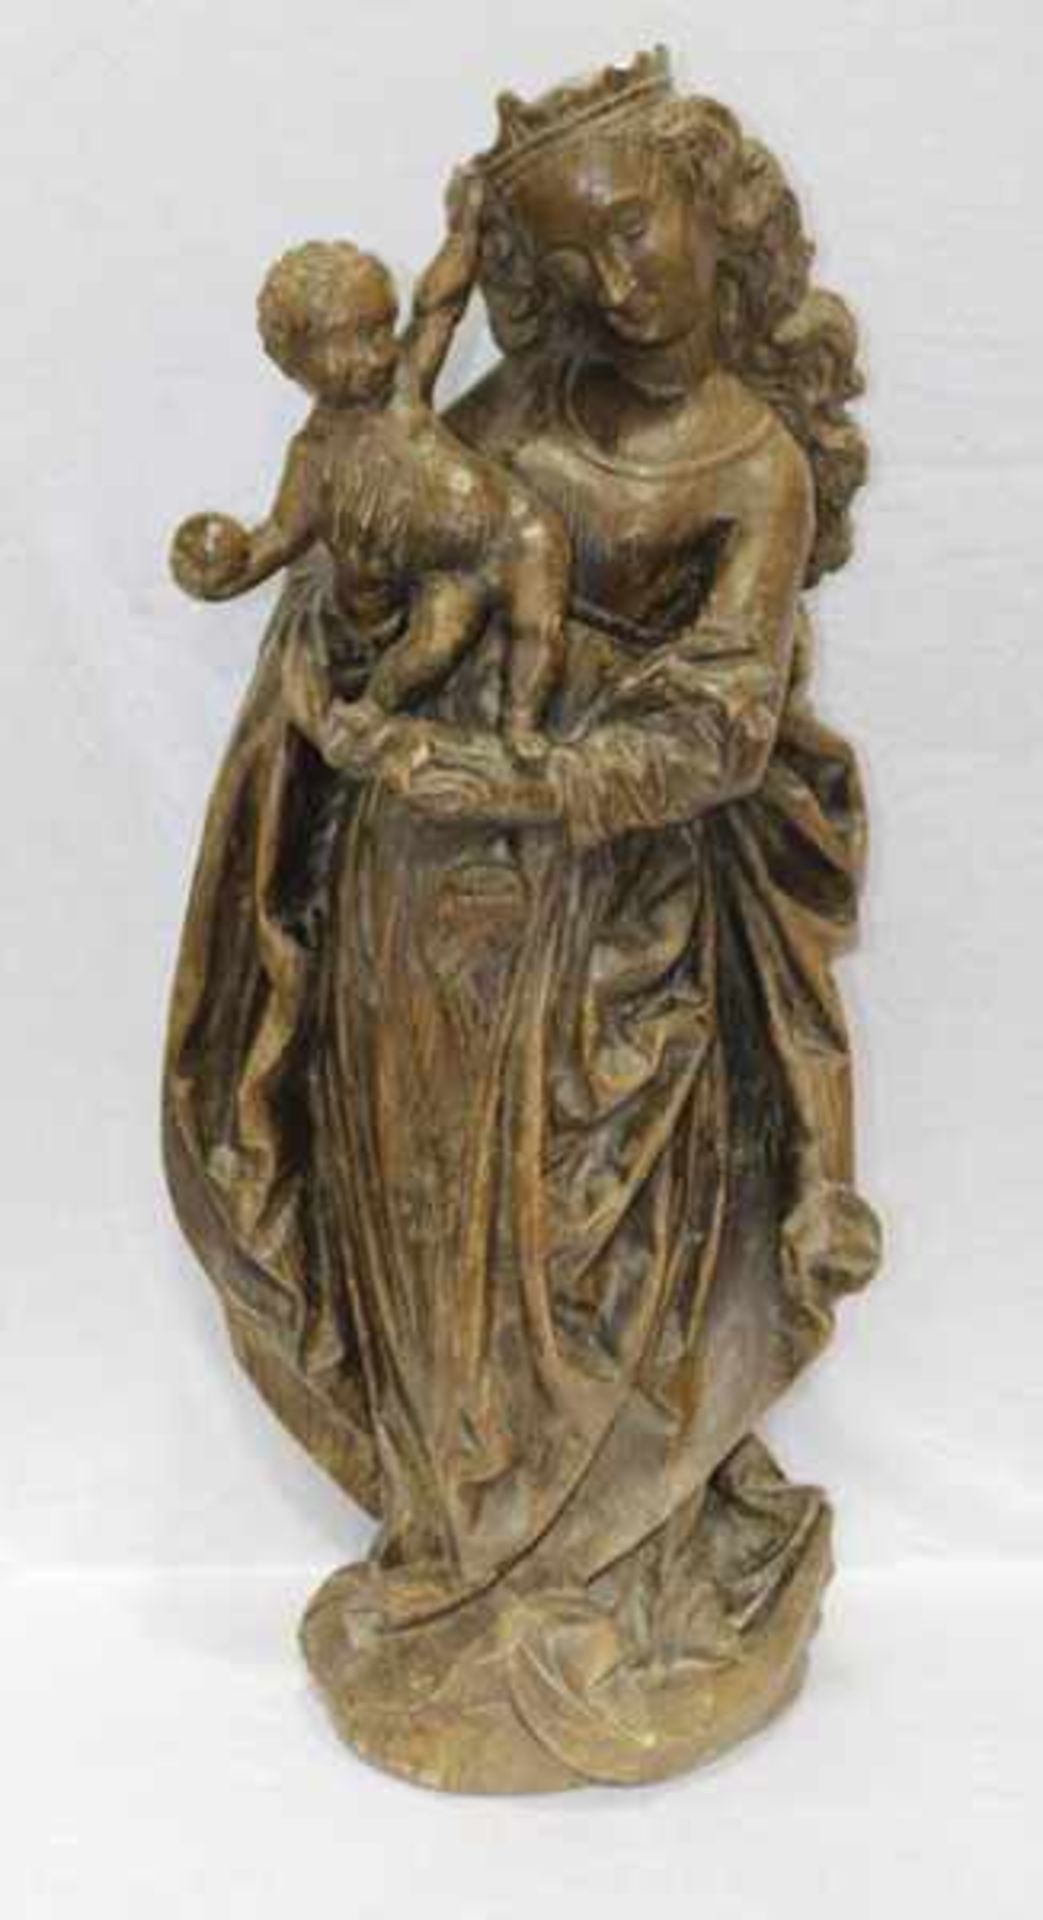 Holz Figurenskulptur 'Maria mit Kind', dunkel gebeizt, 19. Jahrhundert, sehr schön geschnitzt, H 103